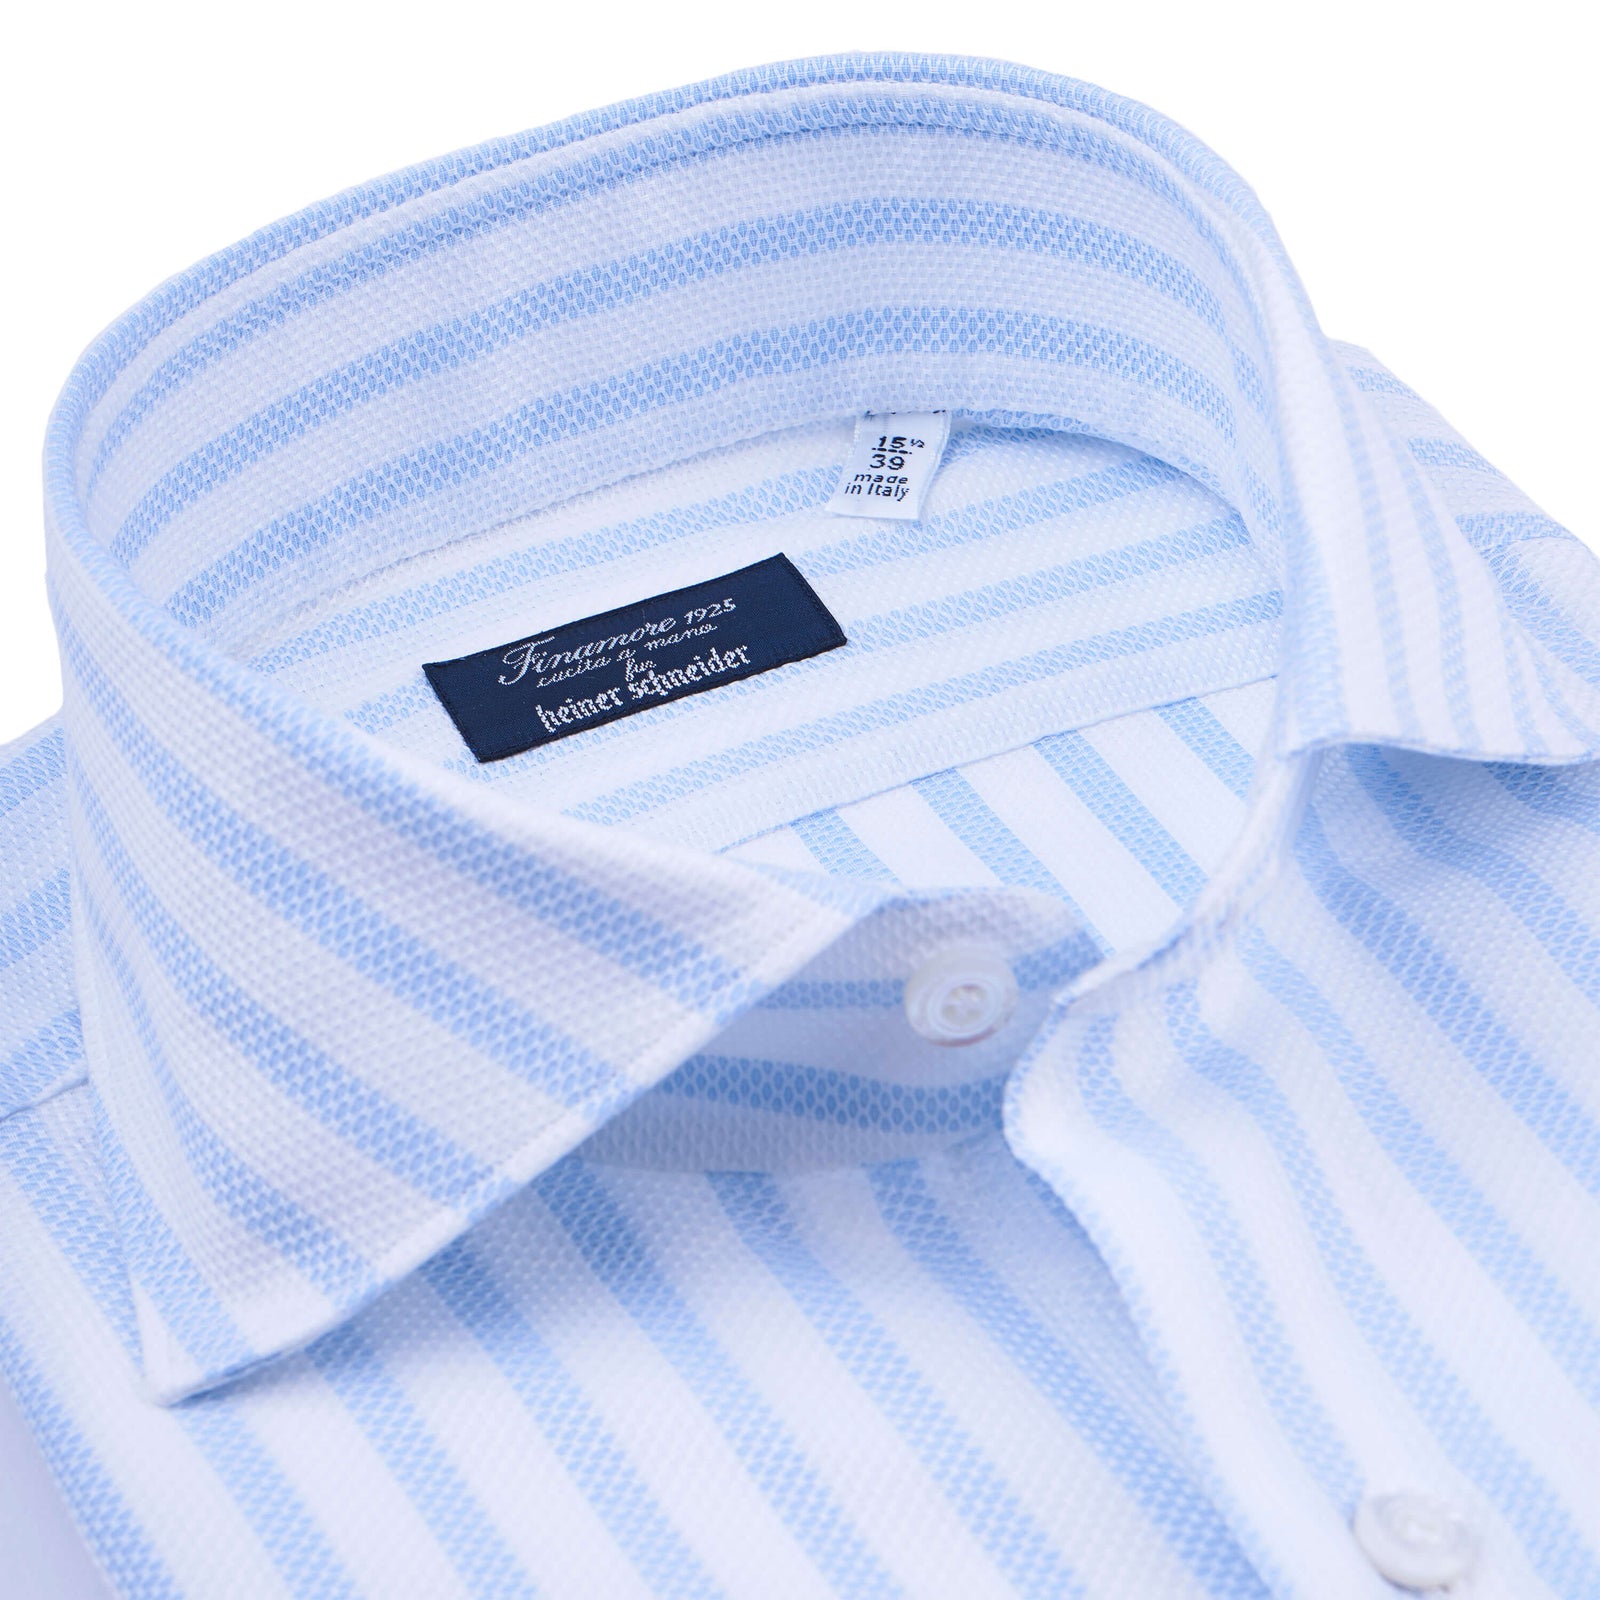 Finamore Piqué Hemd weiß-blau gestreift schmale Milano Passform